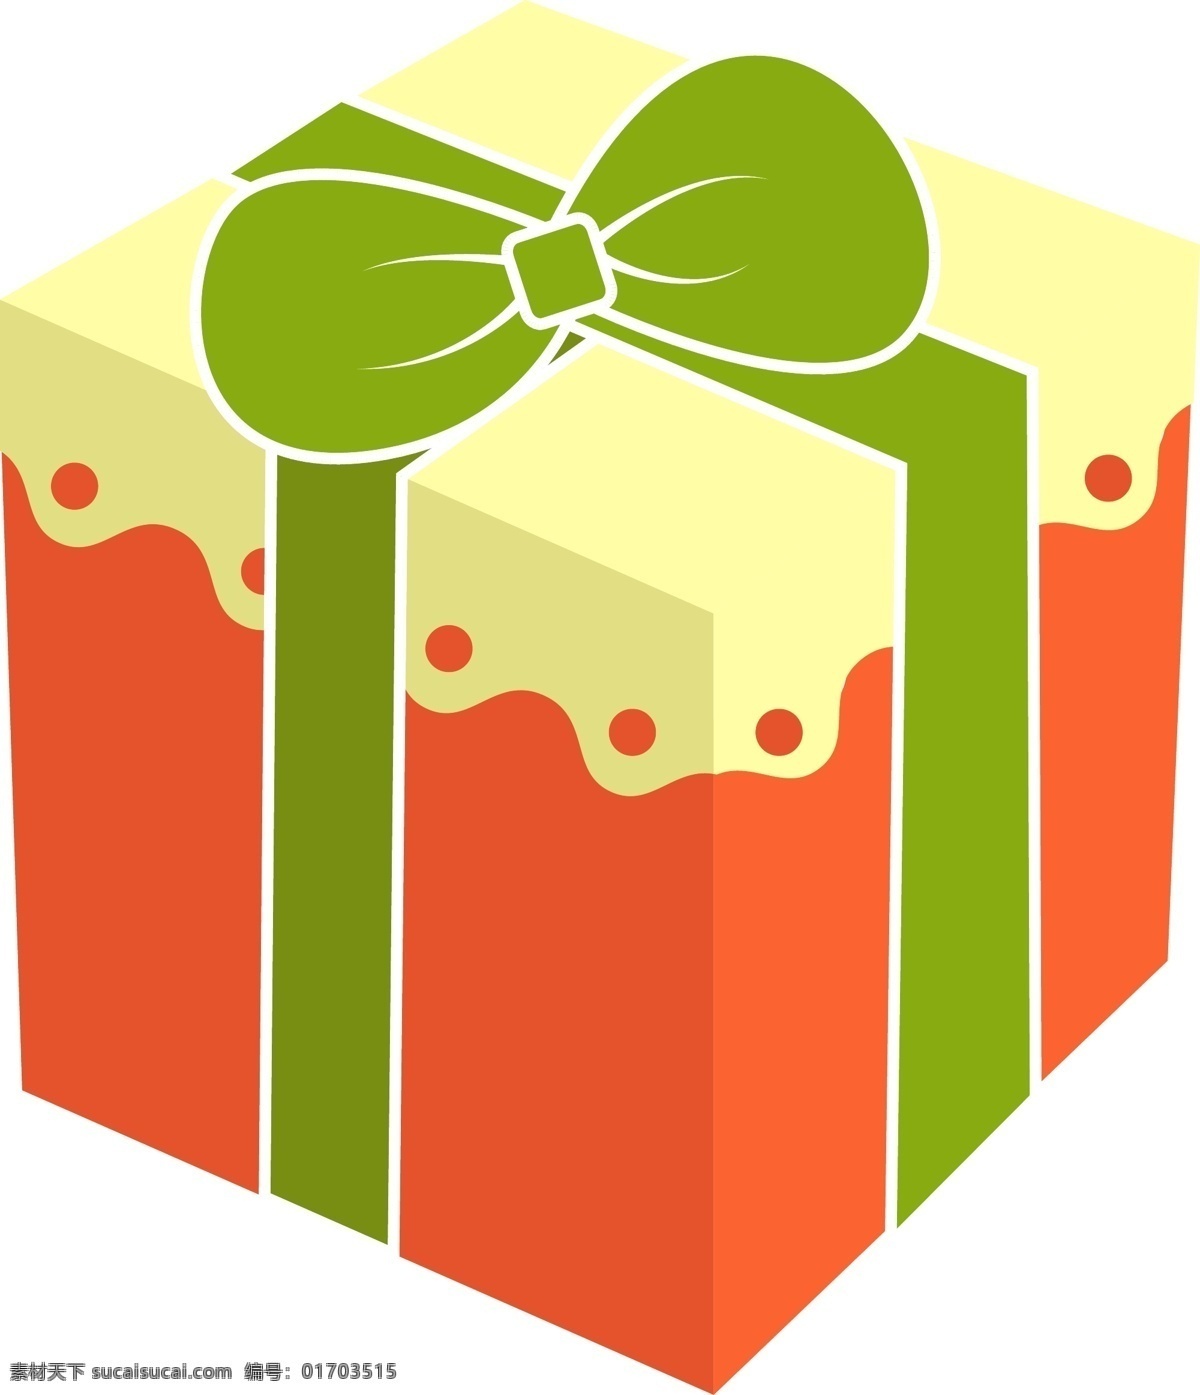 圣诞节 礼物 盒 矢量 图案 卡通 彩色 商用 圣诞节礼物 节日礼物盒 绿色蝴蝶结 粉色 波浪 花纹 可爱 盒子